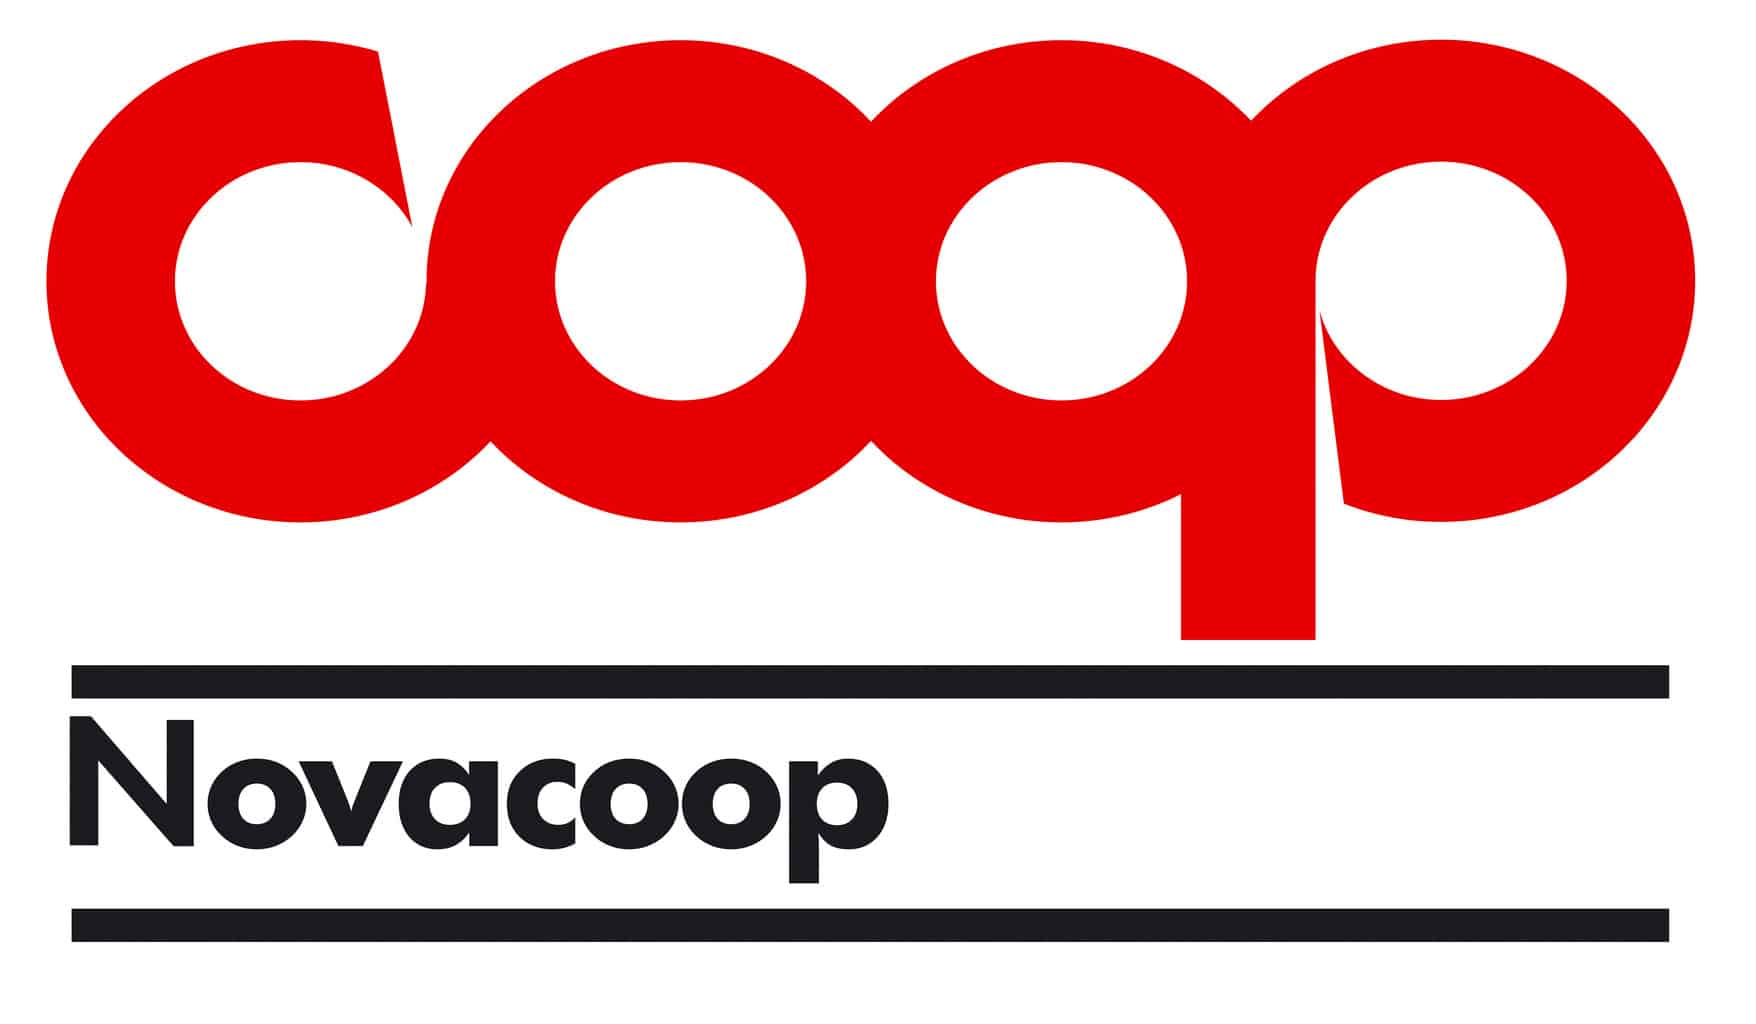 Coop mette in palio buoni spesa fino a 1.000 euro